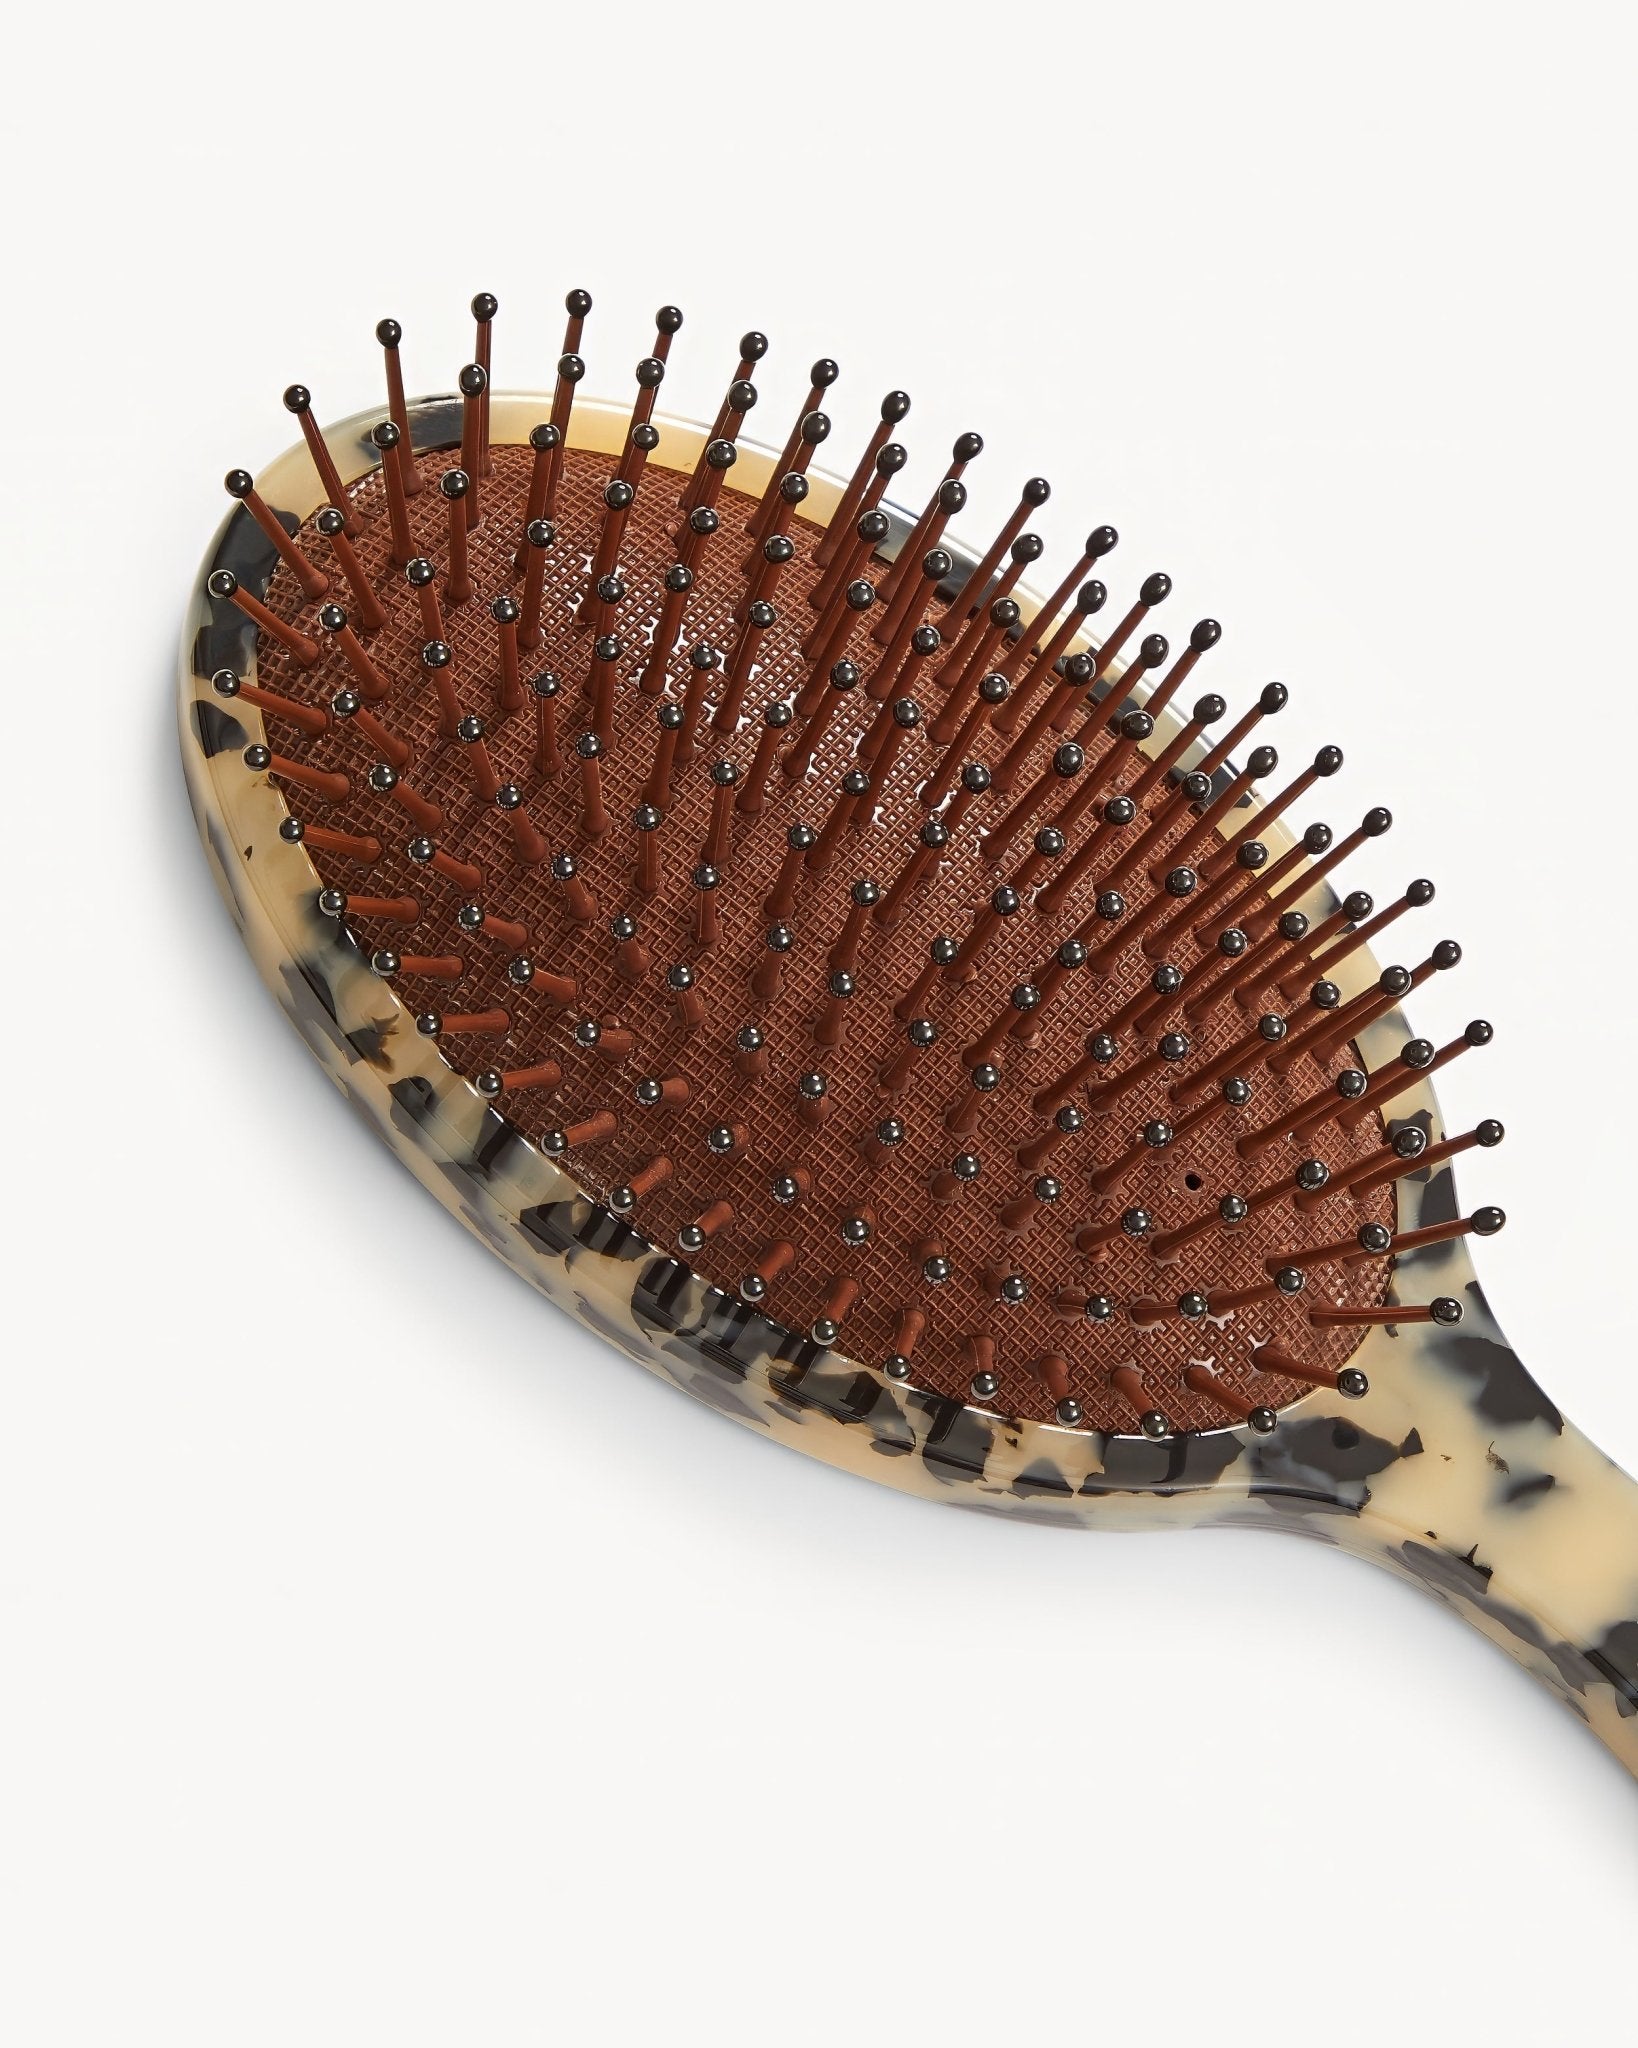 MACHETE Grande Detangling Hair Brush in Blonde Tortoise